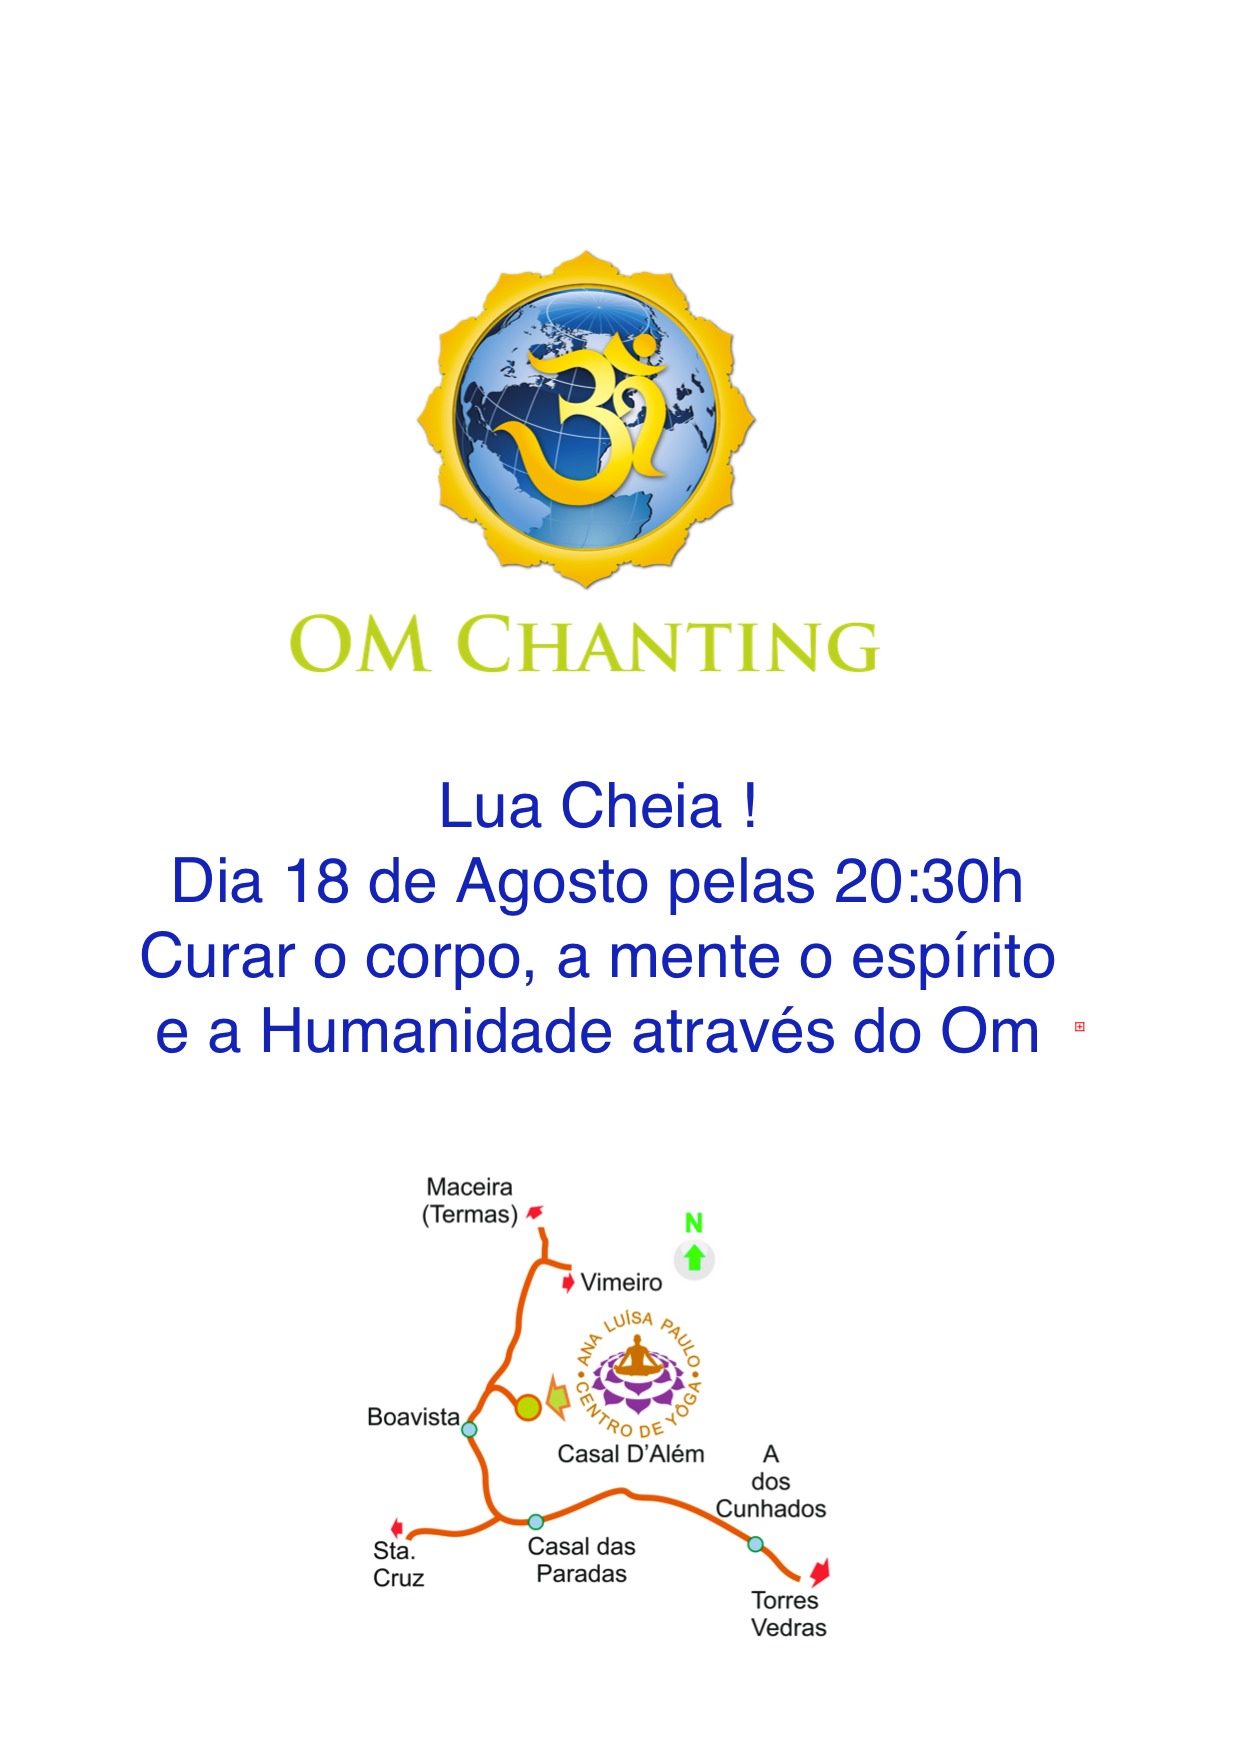 Om Chanting Lua Cheia, Dia 18 de Agosto !